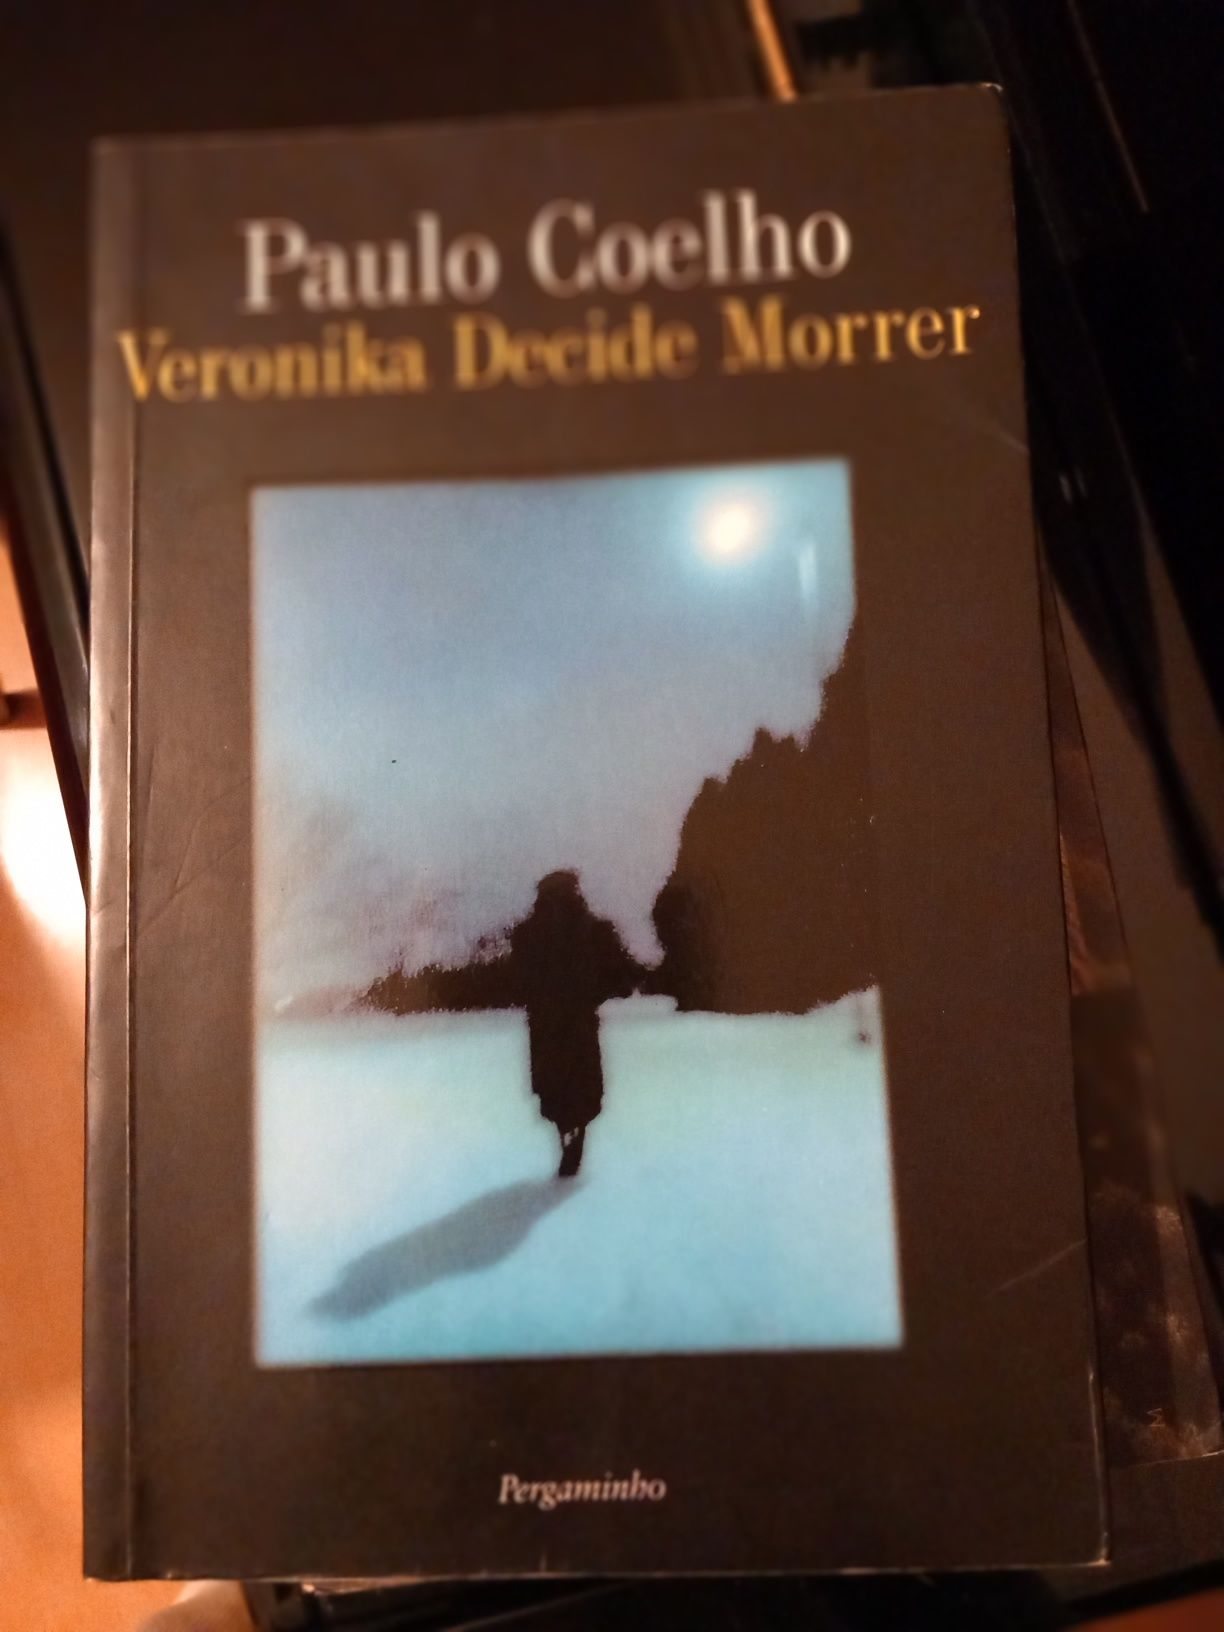 Verónica decide morrer, Paulo Coelho